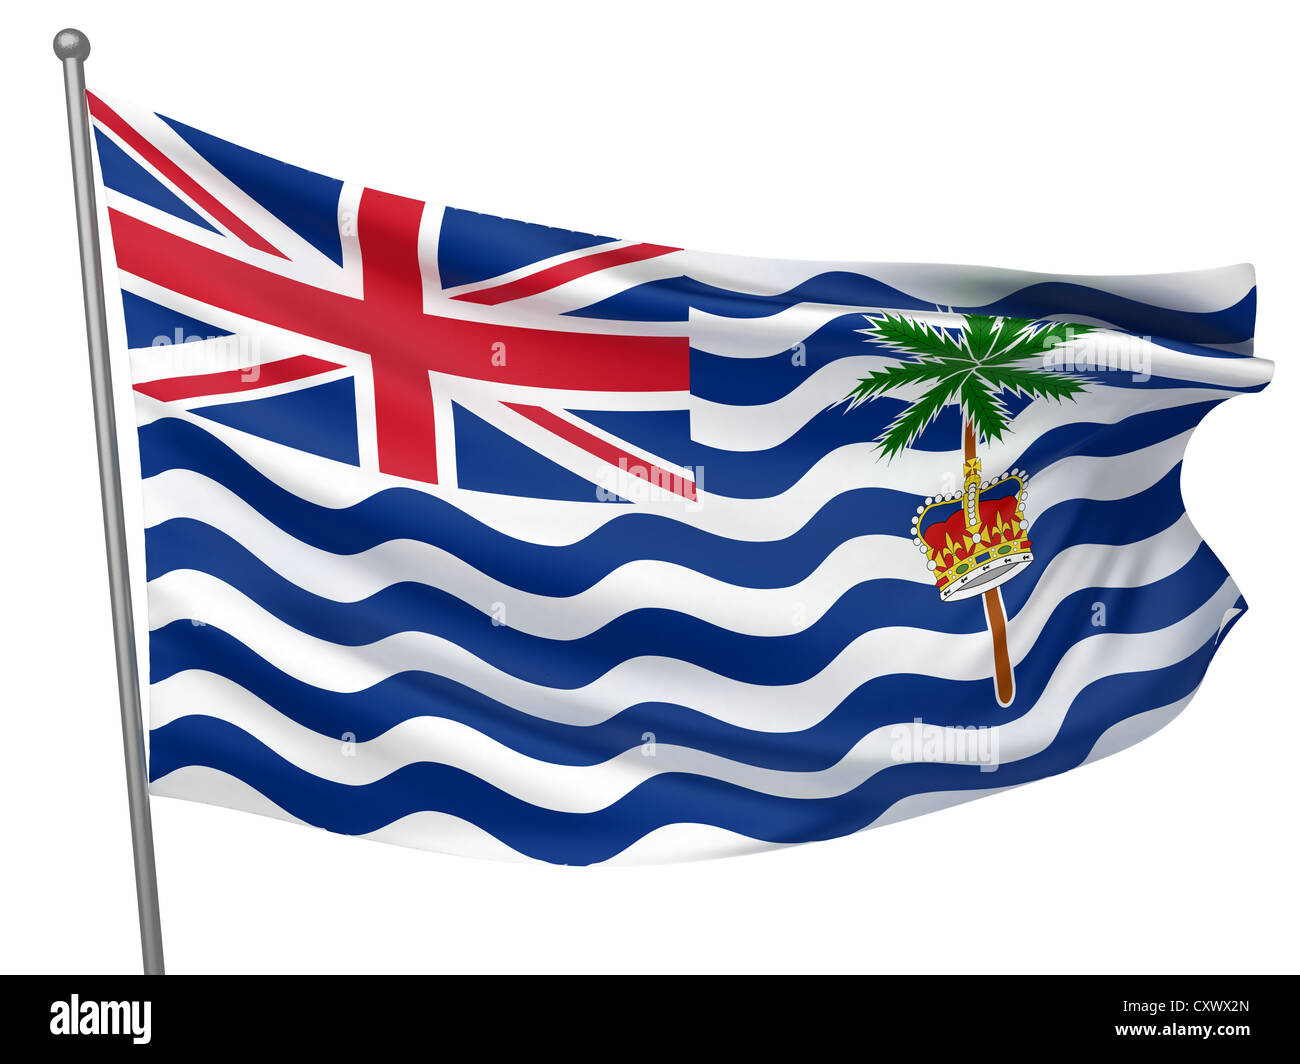 Territorio britannico dell'Oceano Indiano bandiera - tutti i paesi - Collezione immagine isolata Foto Stock